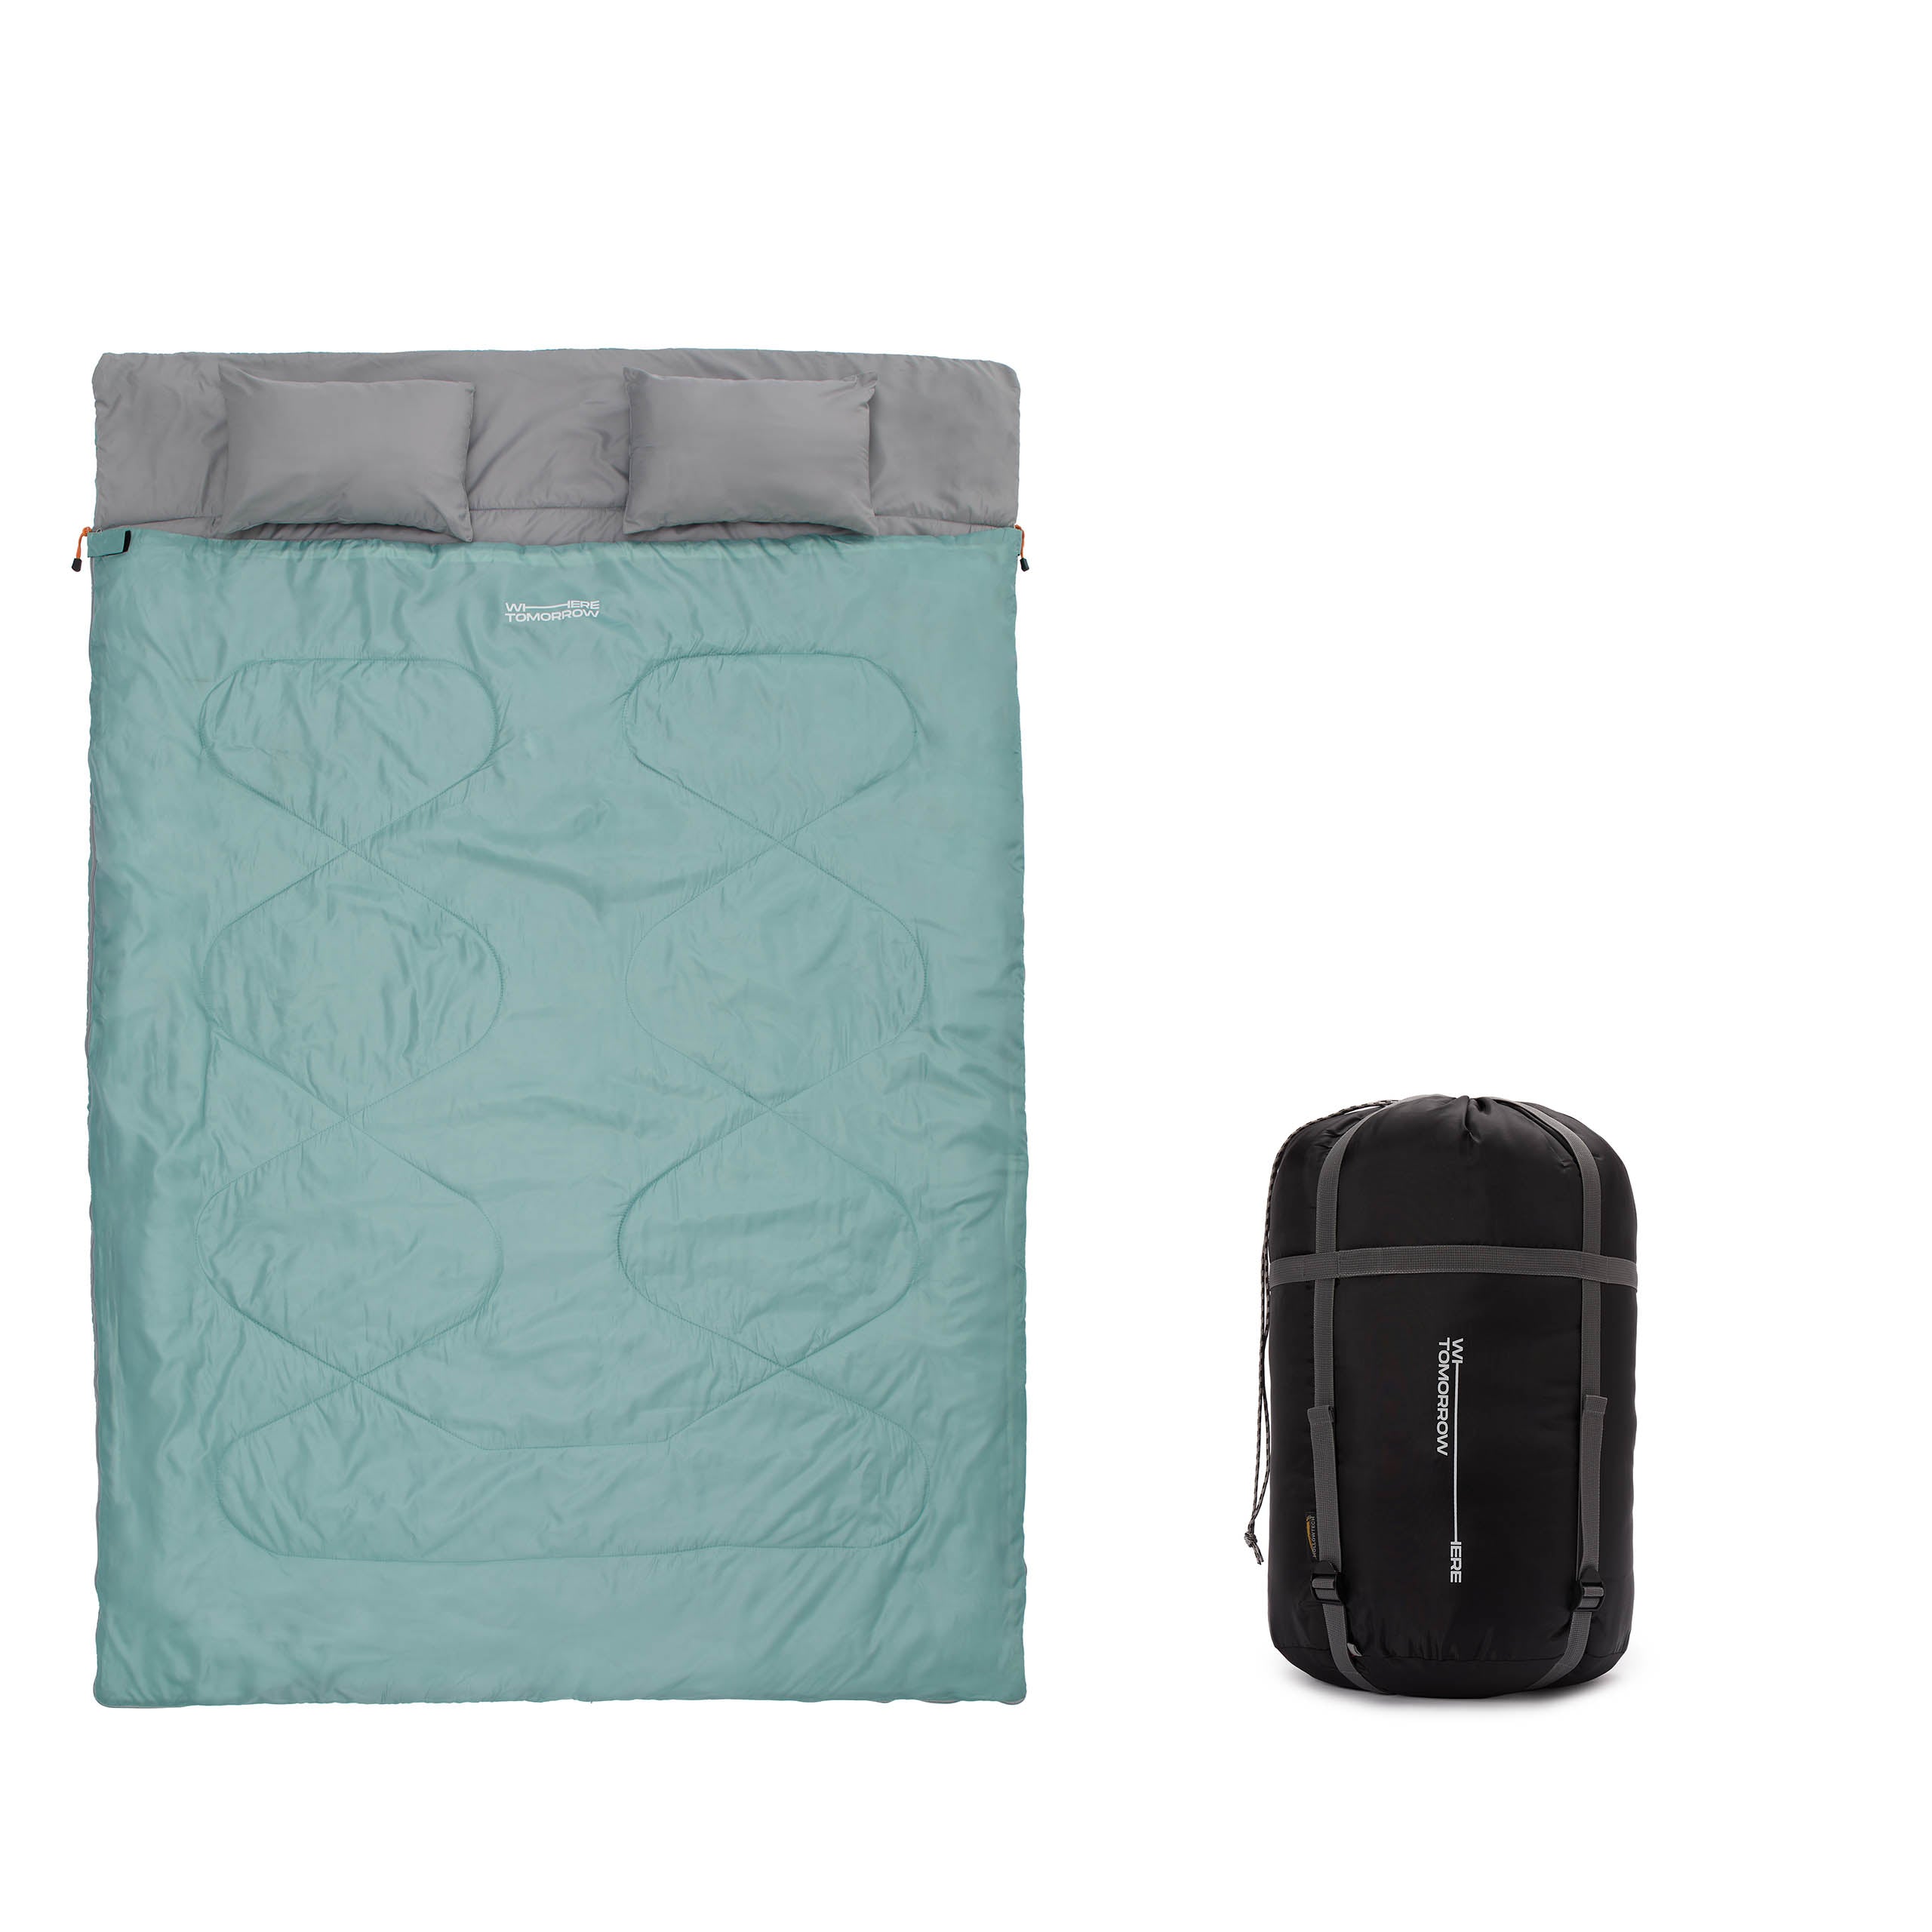 Doppelschlafsack mit Tragetasche - 2-Personen Schlafsack - 190 x 150 cm - Hellblau